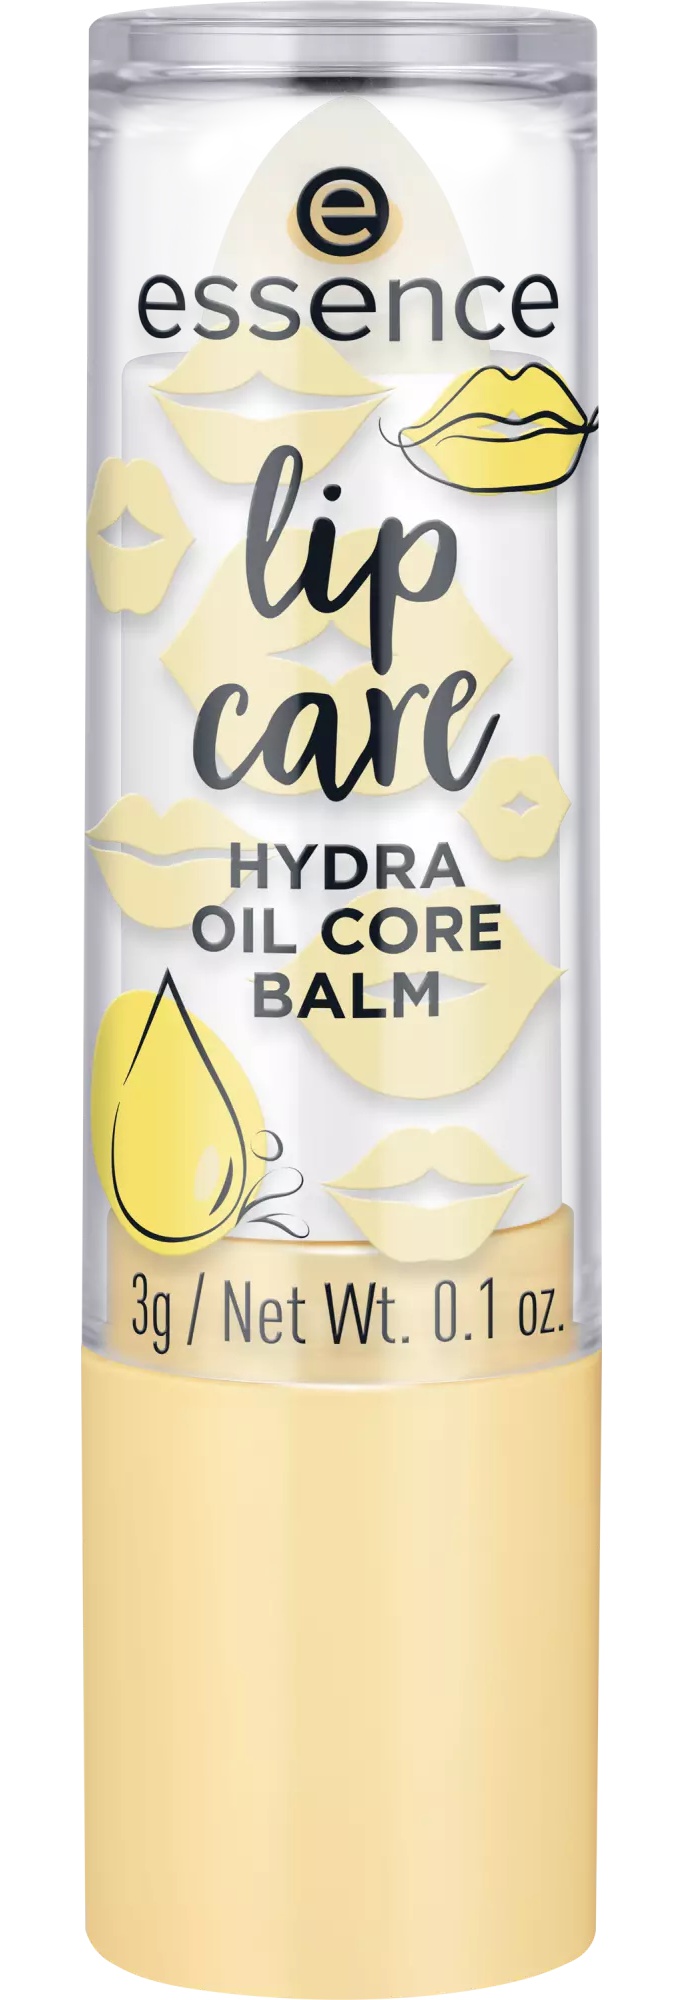 Essence Lip Care Hydra Oil Core Balm